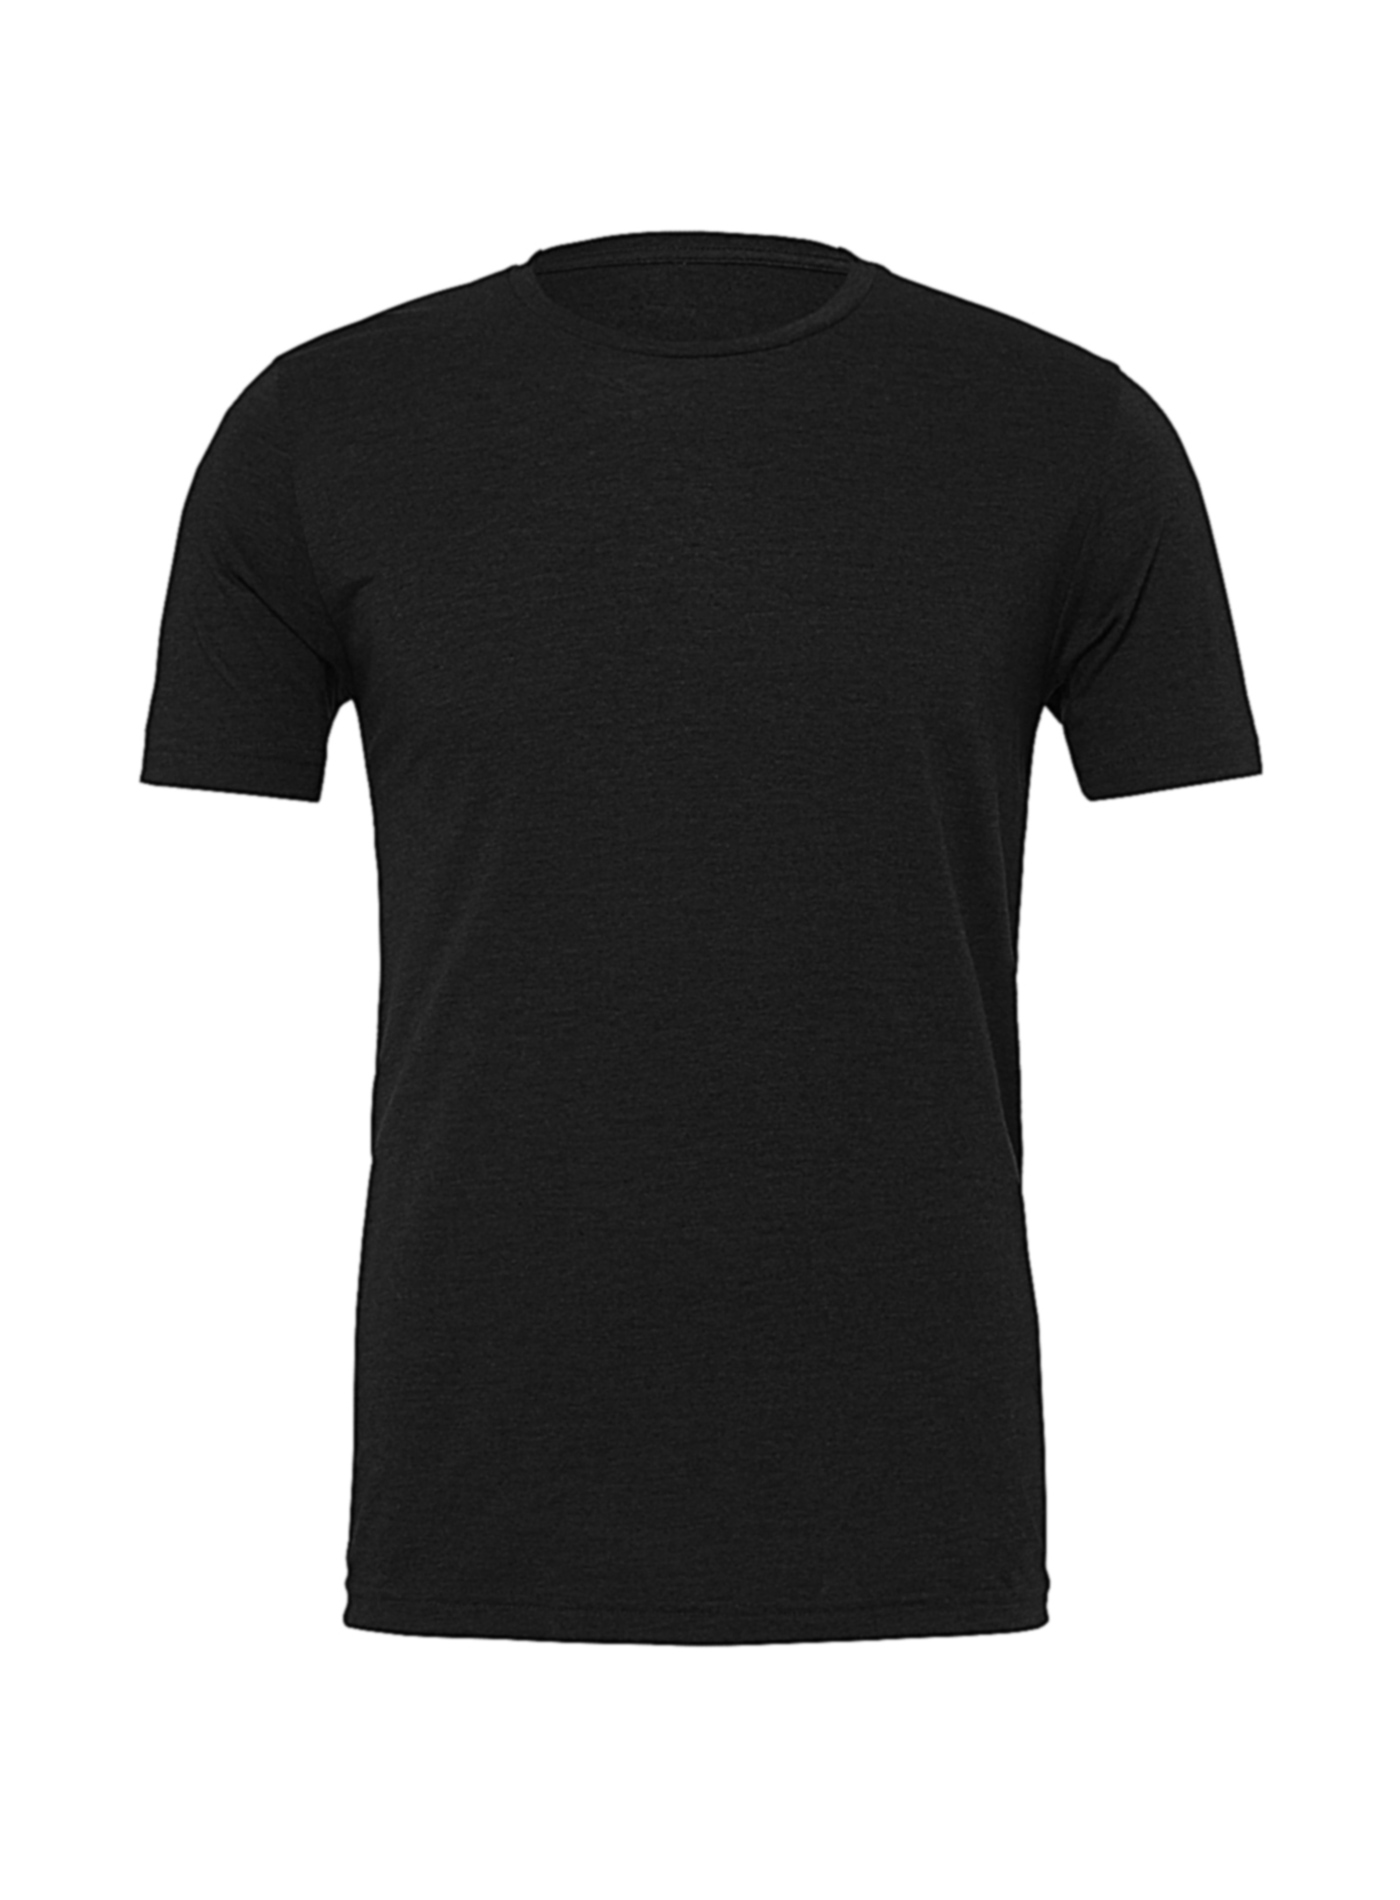 Pánské tričko Jersey Heather - černá XL